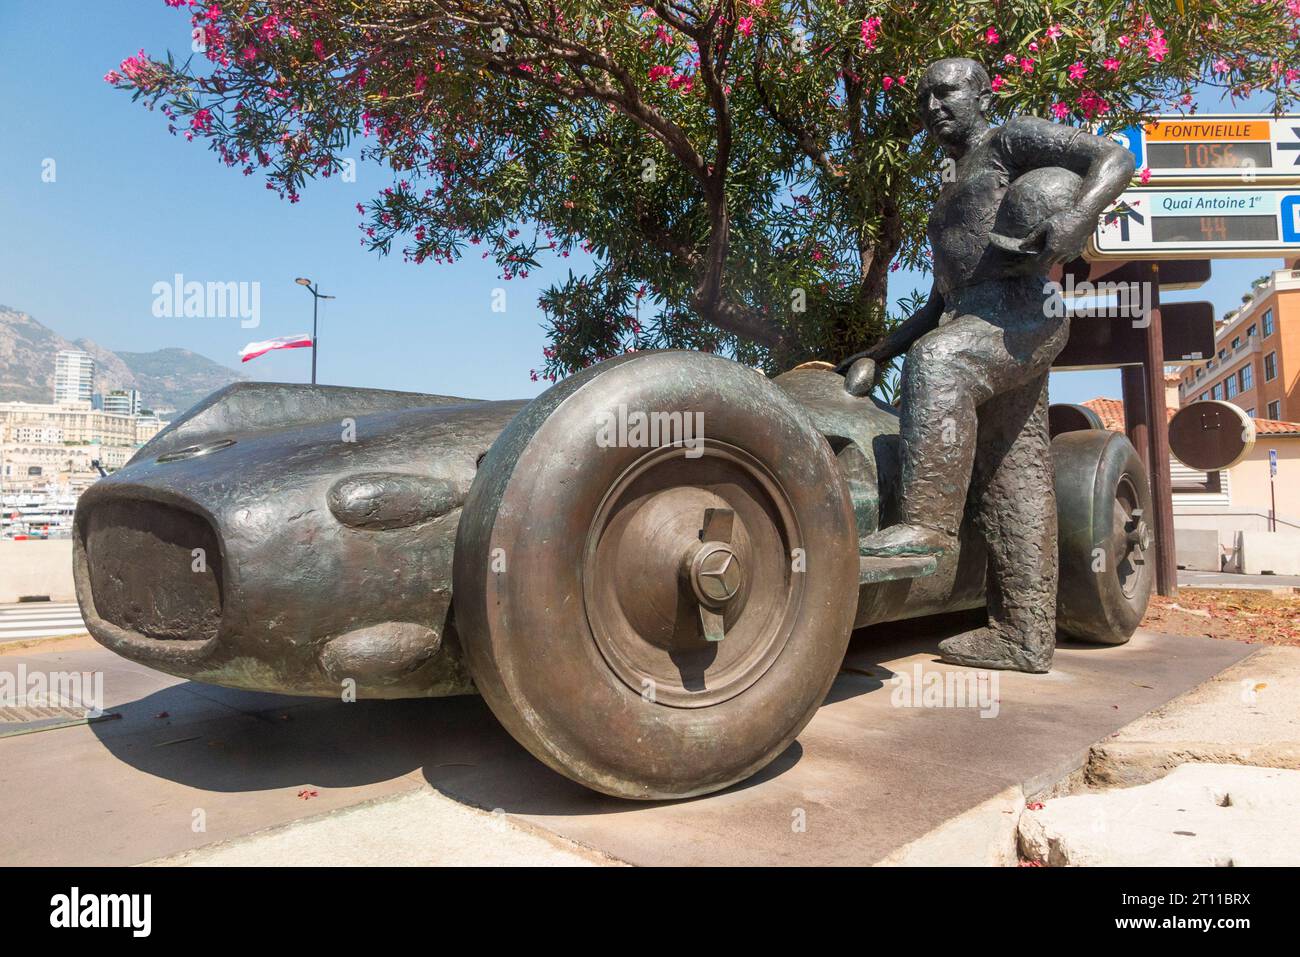 Statue / Skulptur des Fahrers Juan Manuel Fangio, der das erste Jahrzehnt des Formel-1-Rennens dominierte. Abgebildet mit einem Mercedes-Benz Auto, in der Nähe der Grand-Prix-Strecke von Monaco. (135) Stockfoto